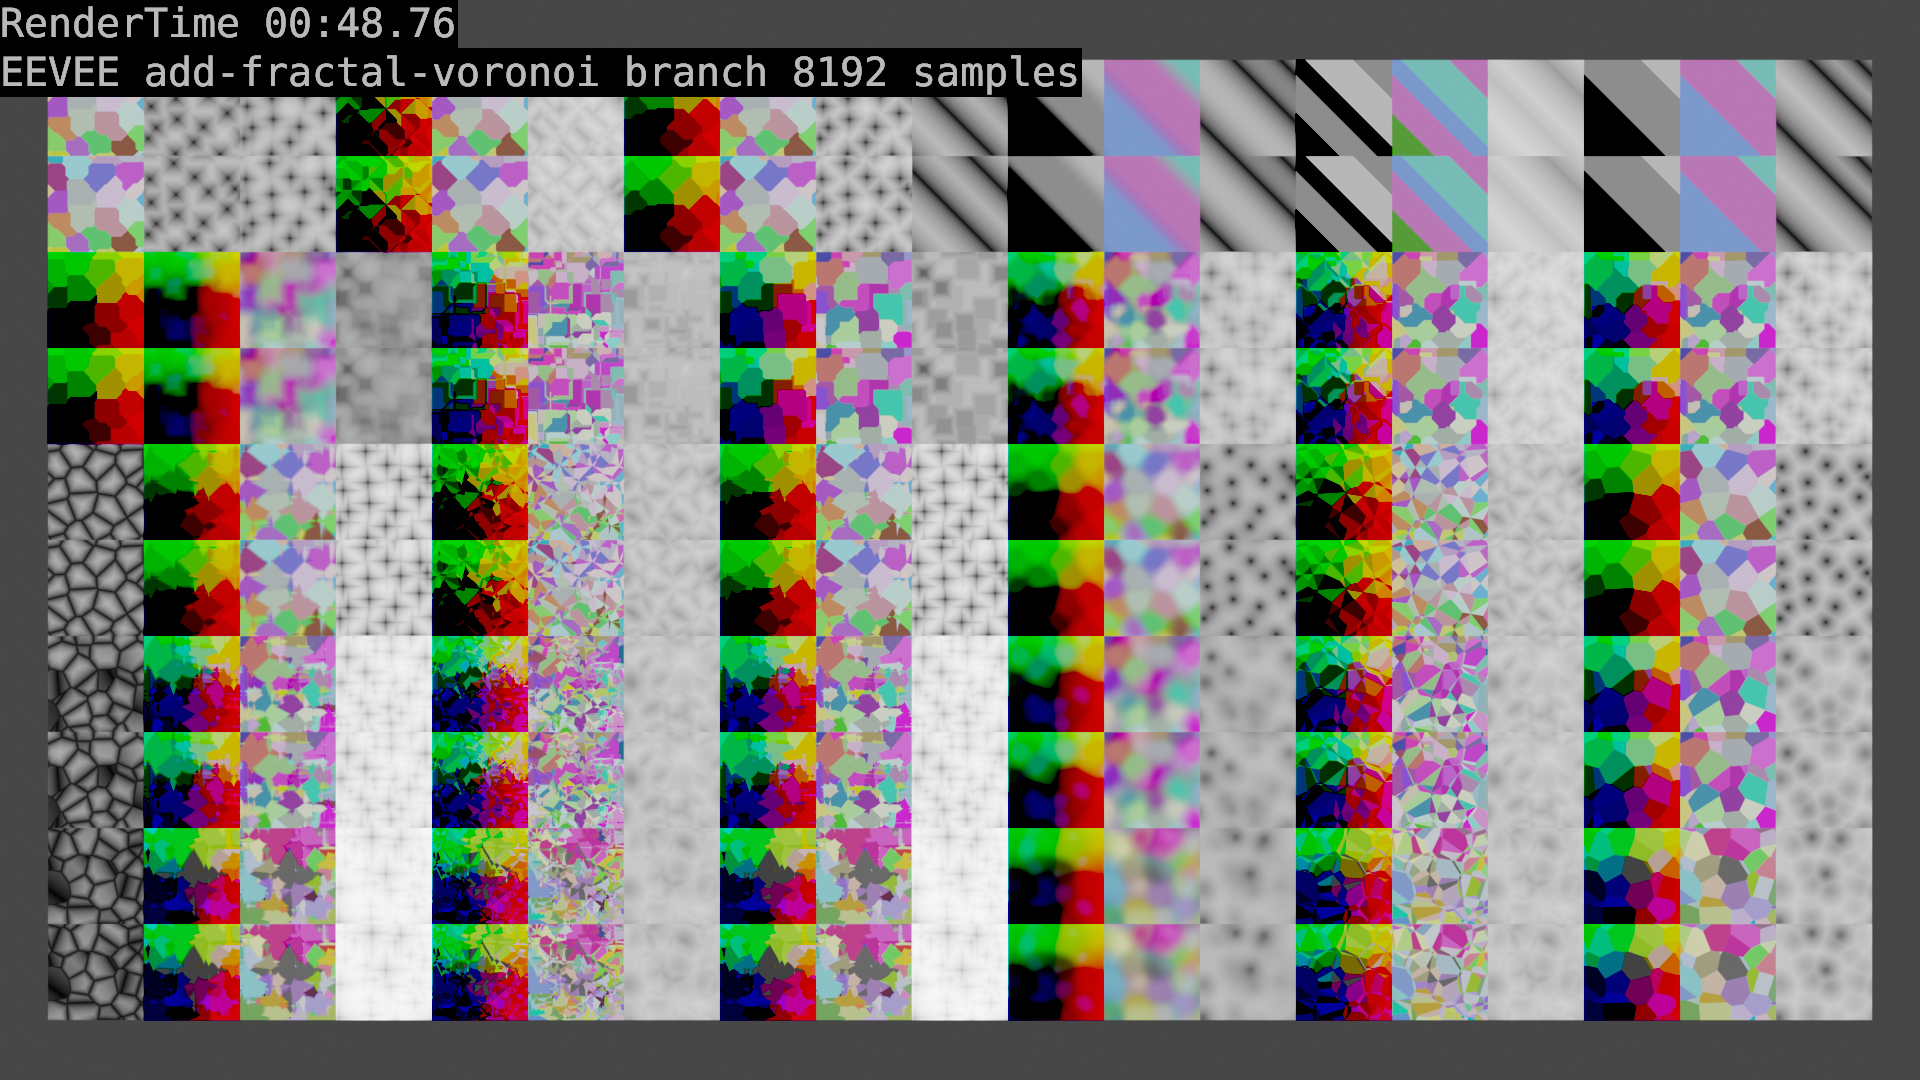 EEVEE_add-fractal-voronoi_branch_test.png